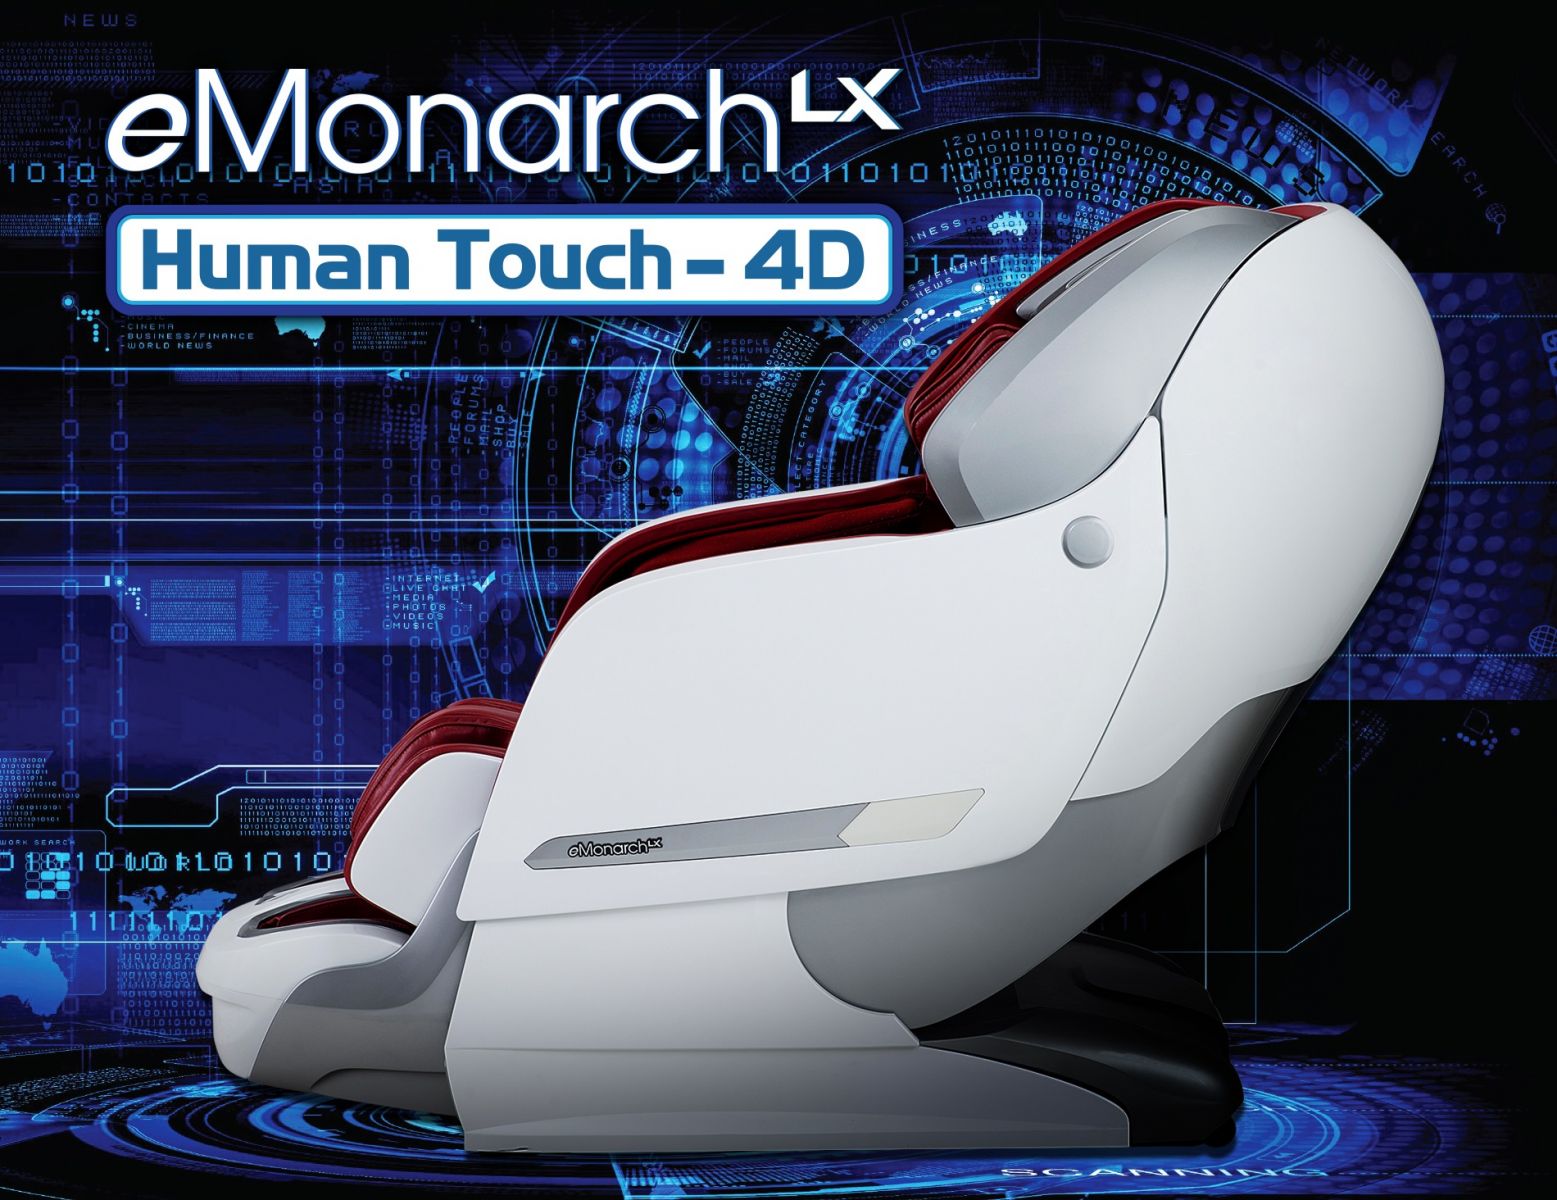 Công nghệ 4D Human Touch của Ghế massage OKIA eMonarch LX